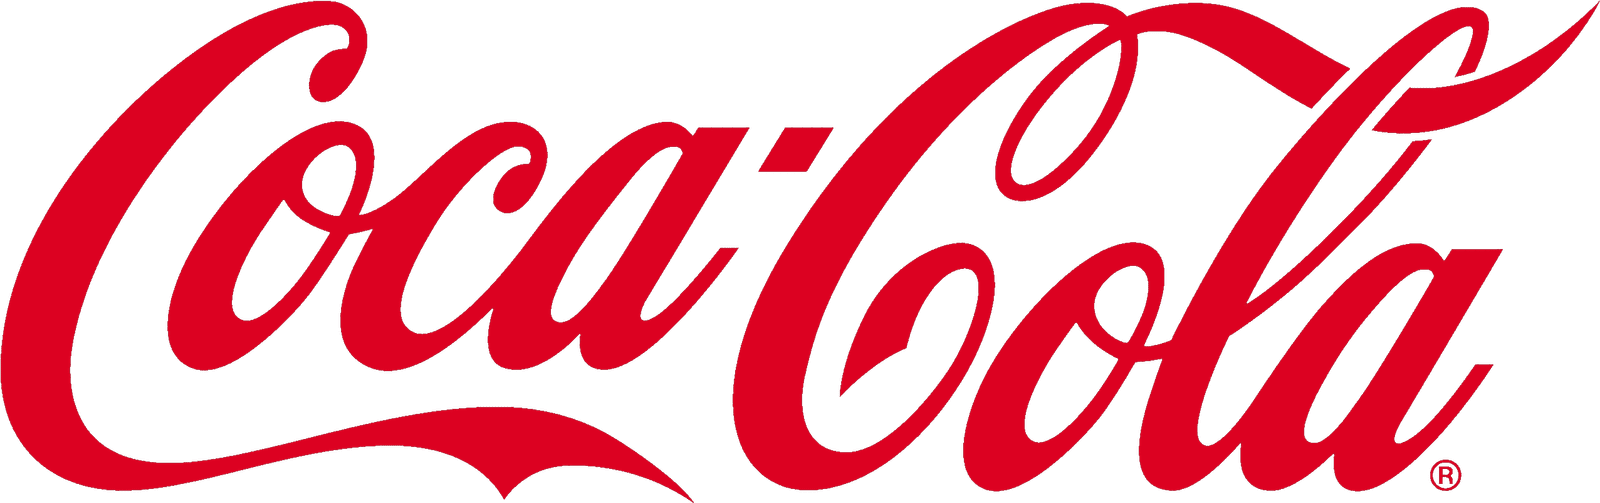 Coca_Cola-Logo-PNG1